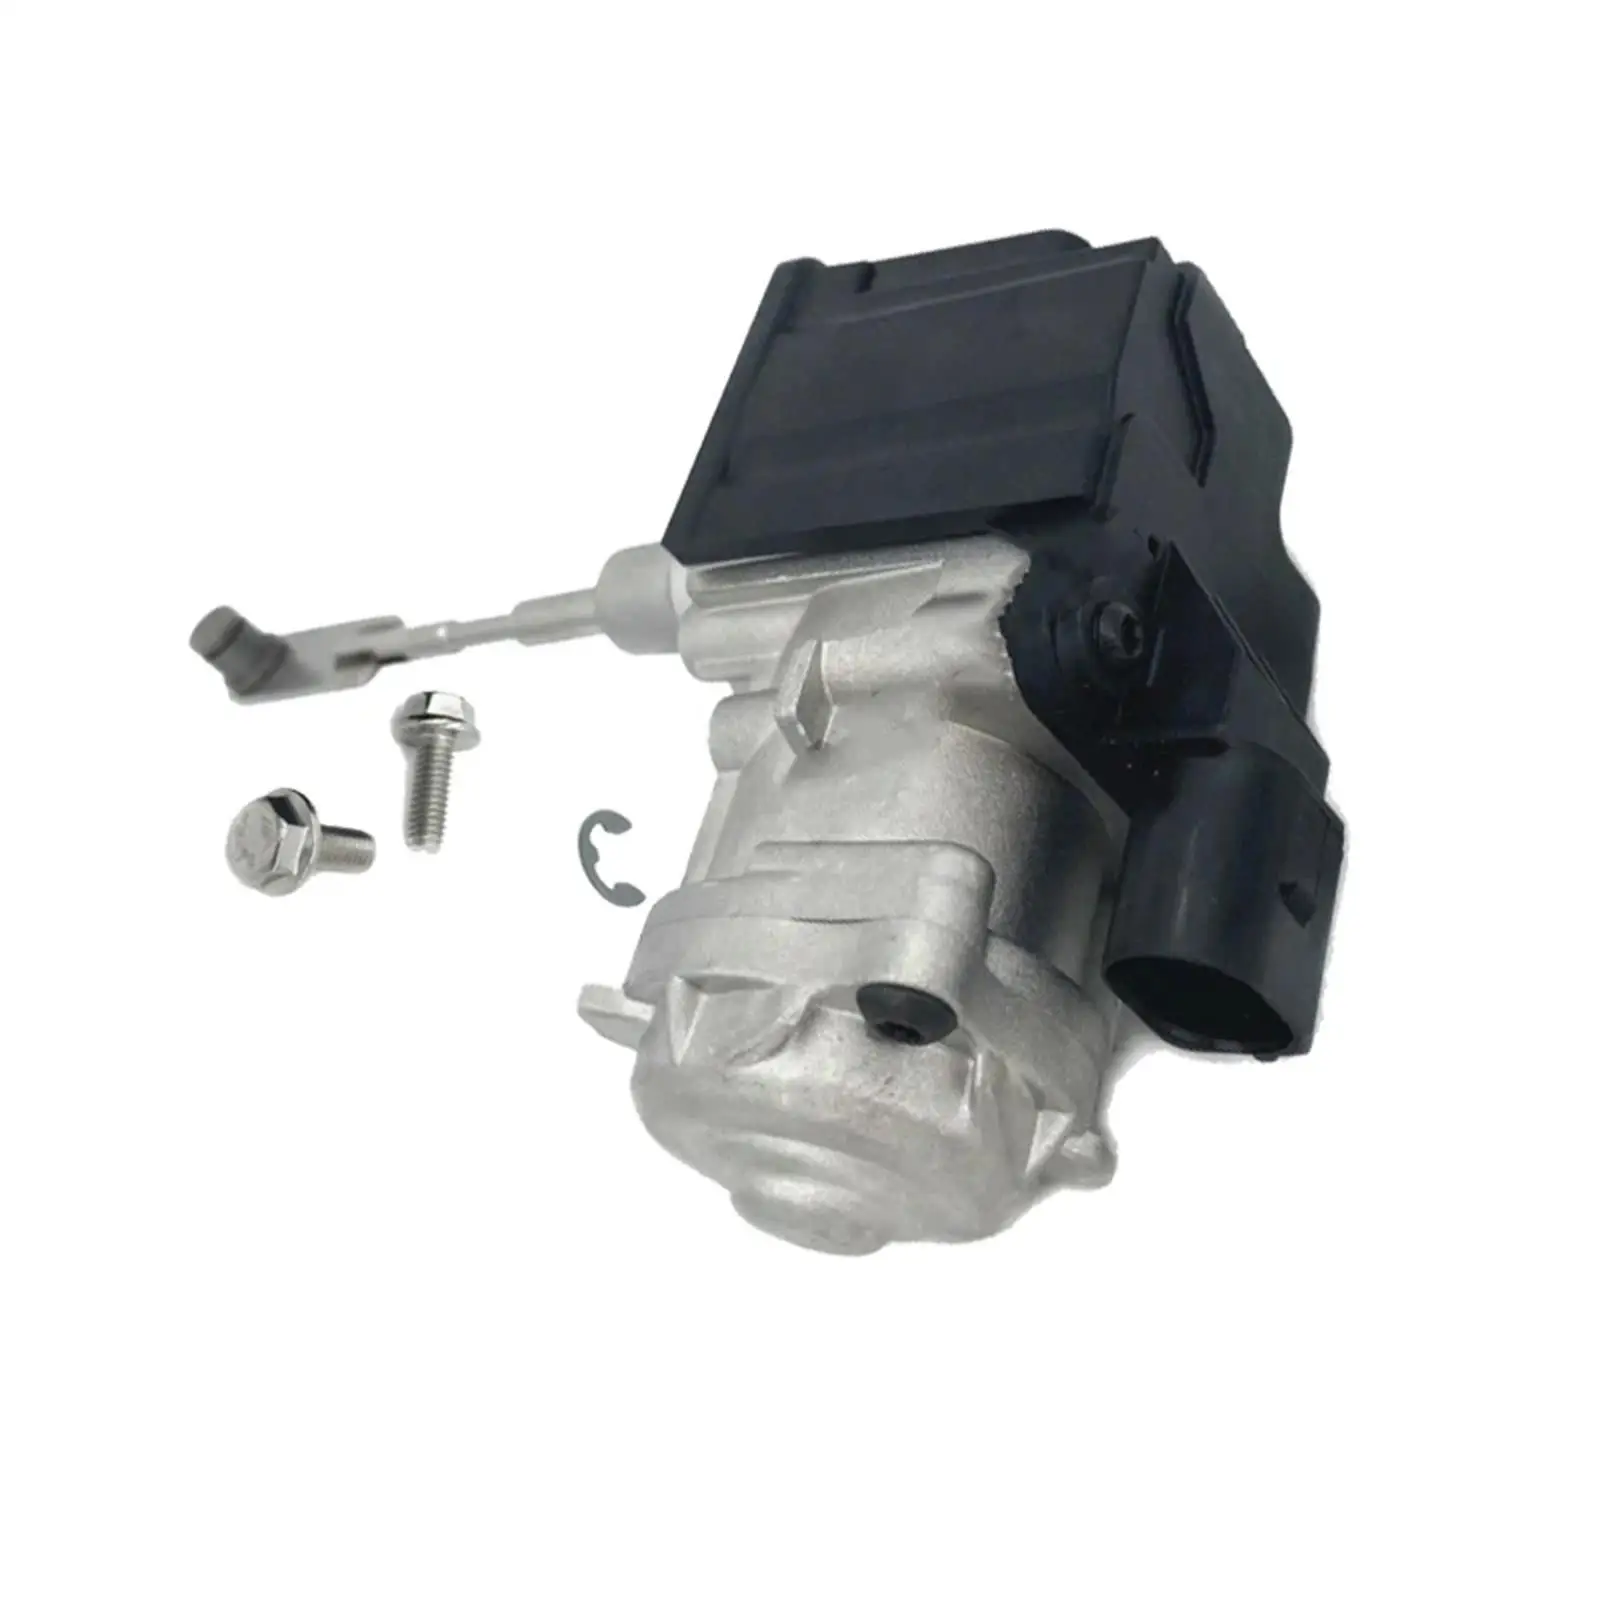   Turbocharger Actuator Premium Replacement 04E145725R 04E145725AD High Parts Premium